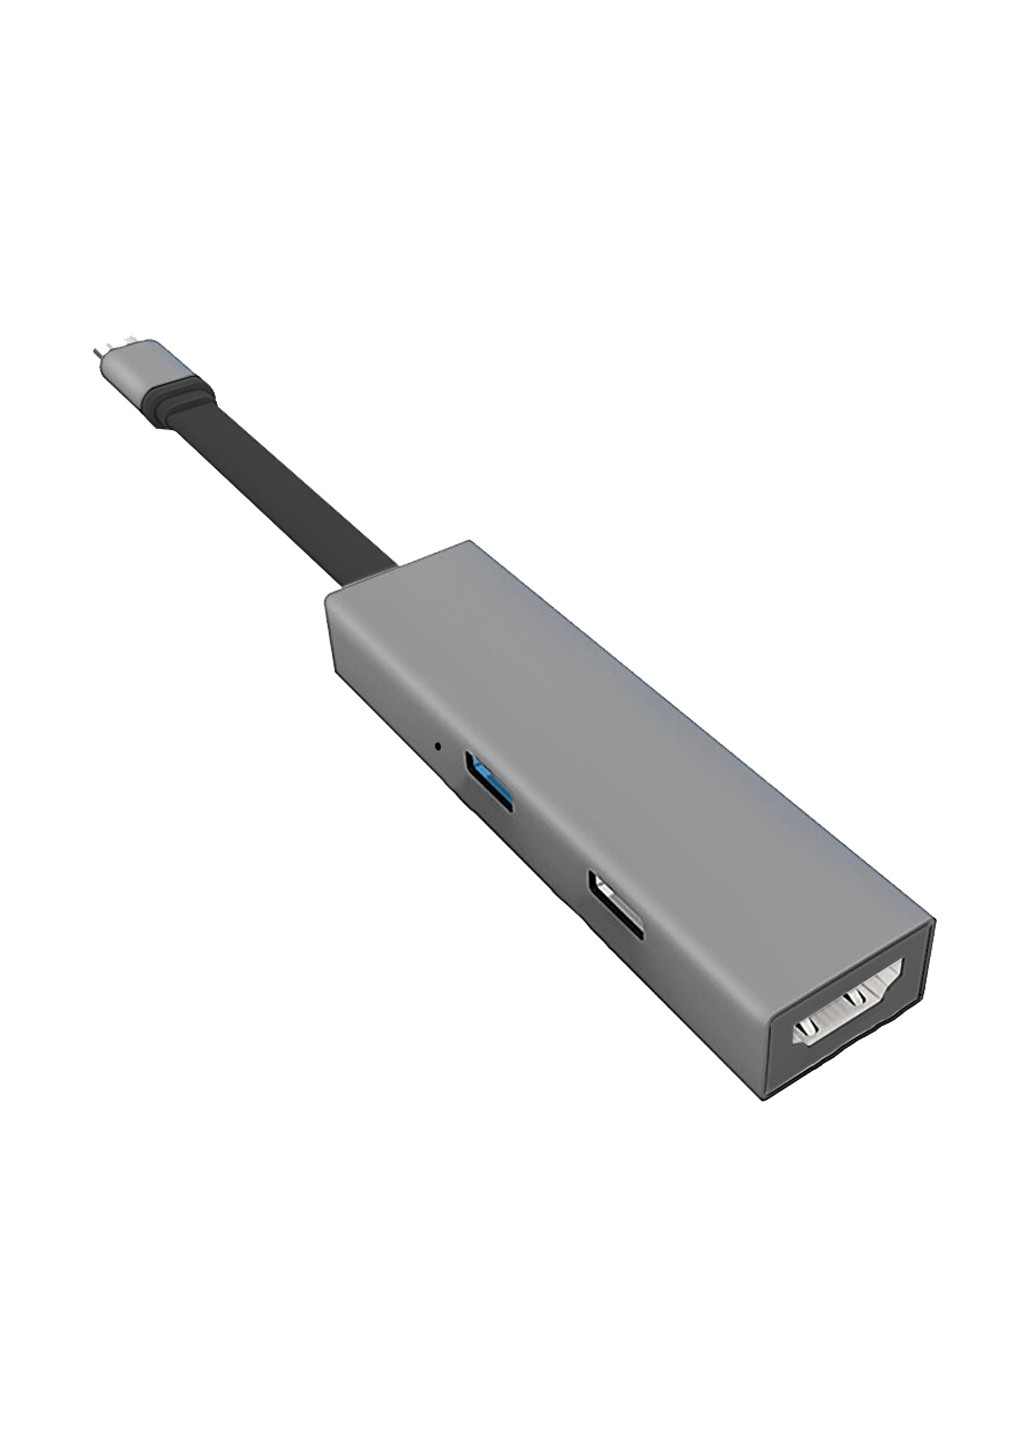 USB-хаб Type-C AC-220 (XK-AC-220) XoKo type-c ac-220 (xk-ac-220) (142118081)